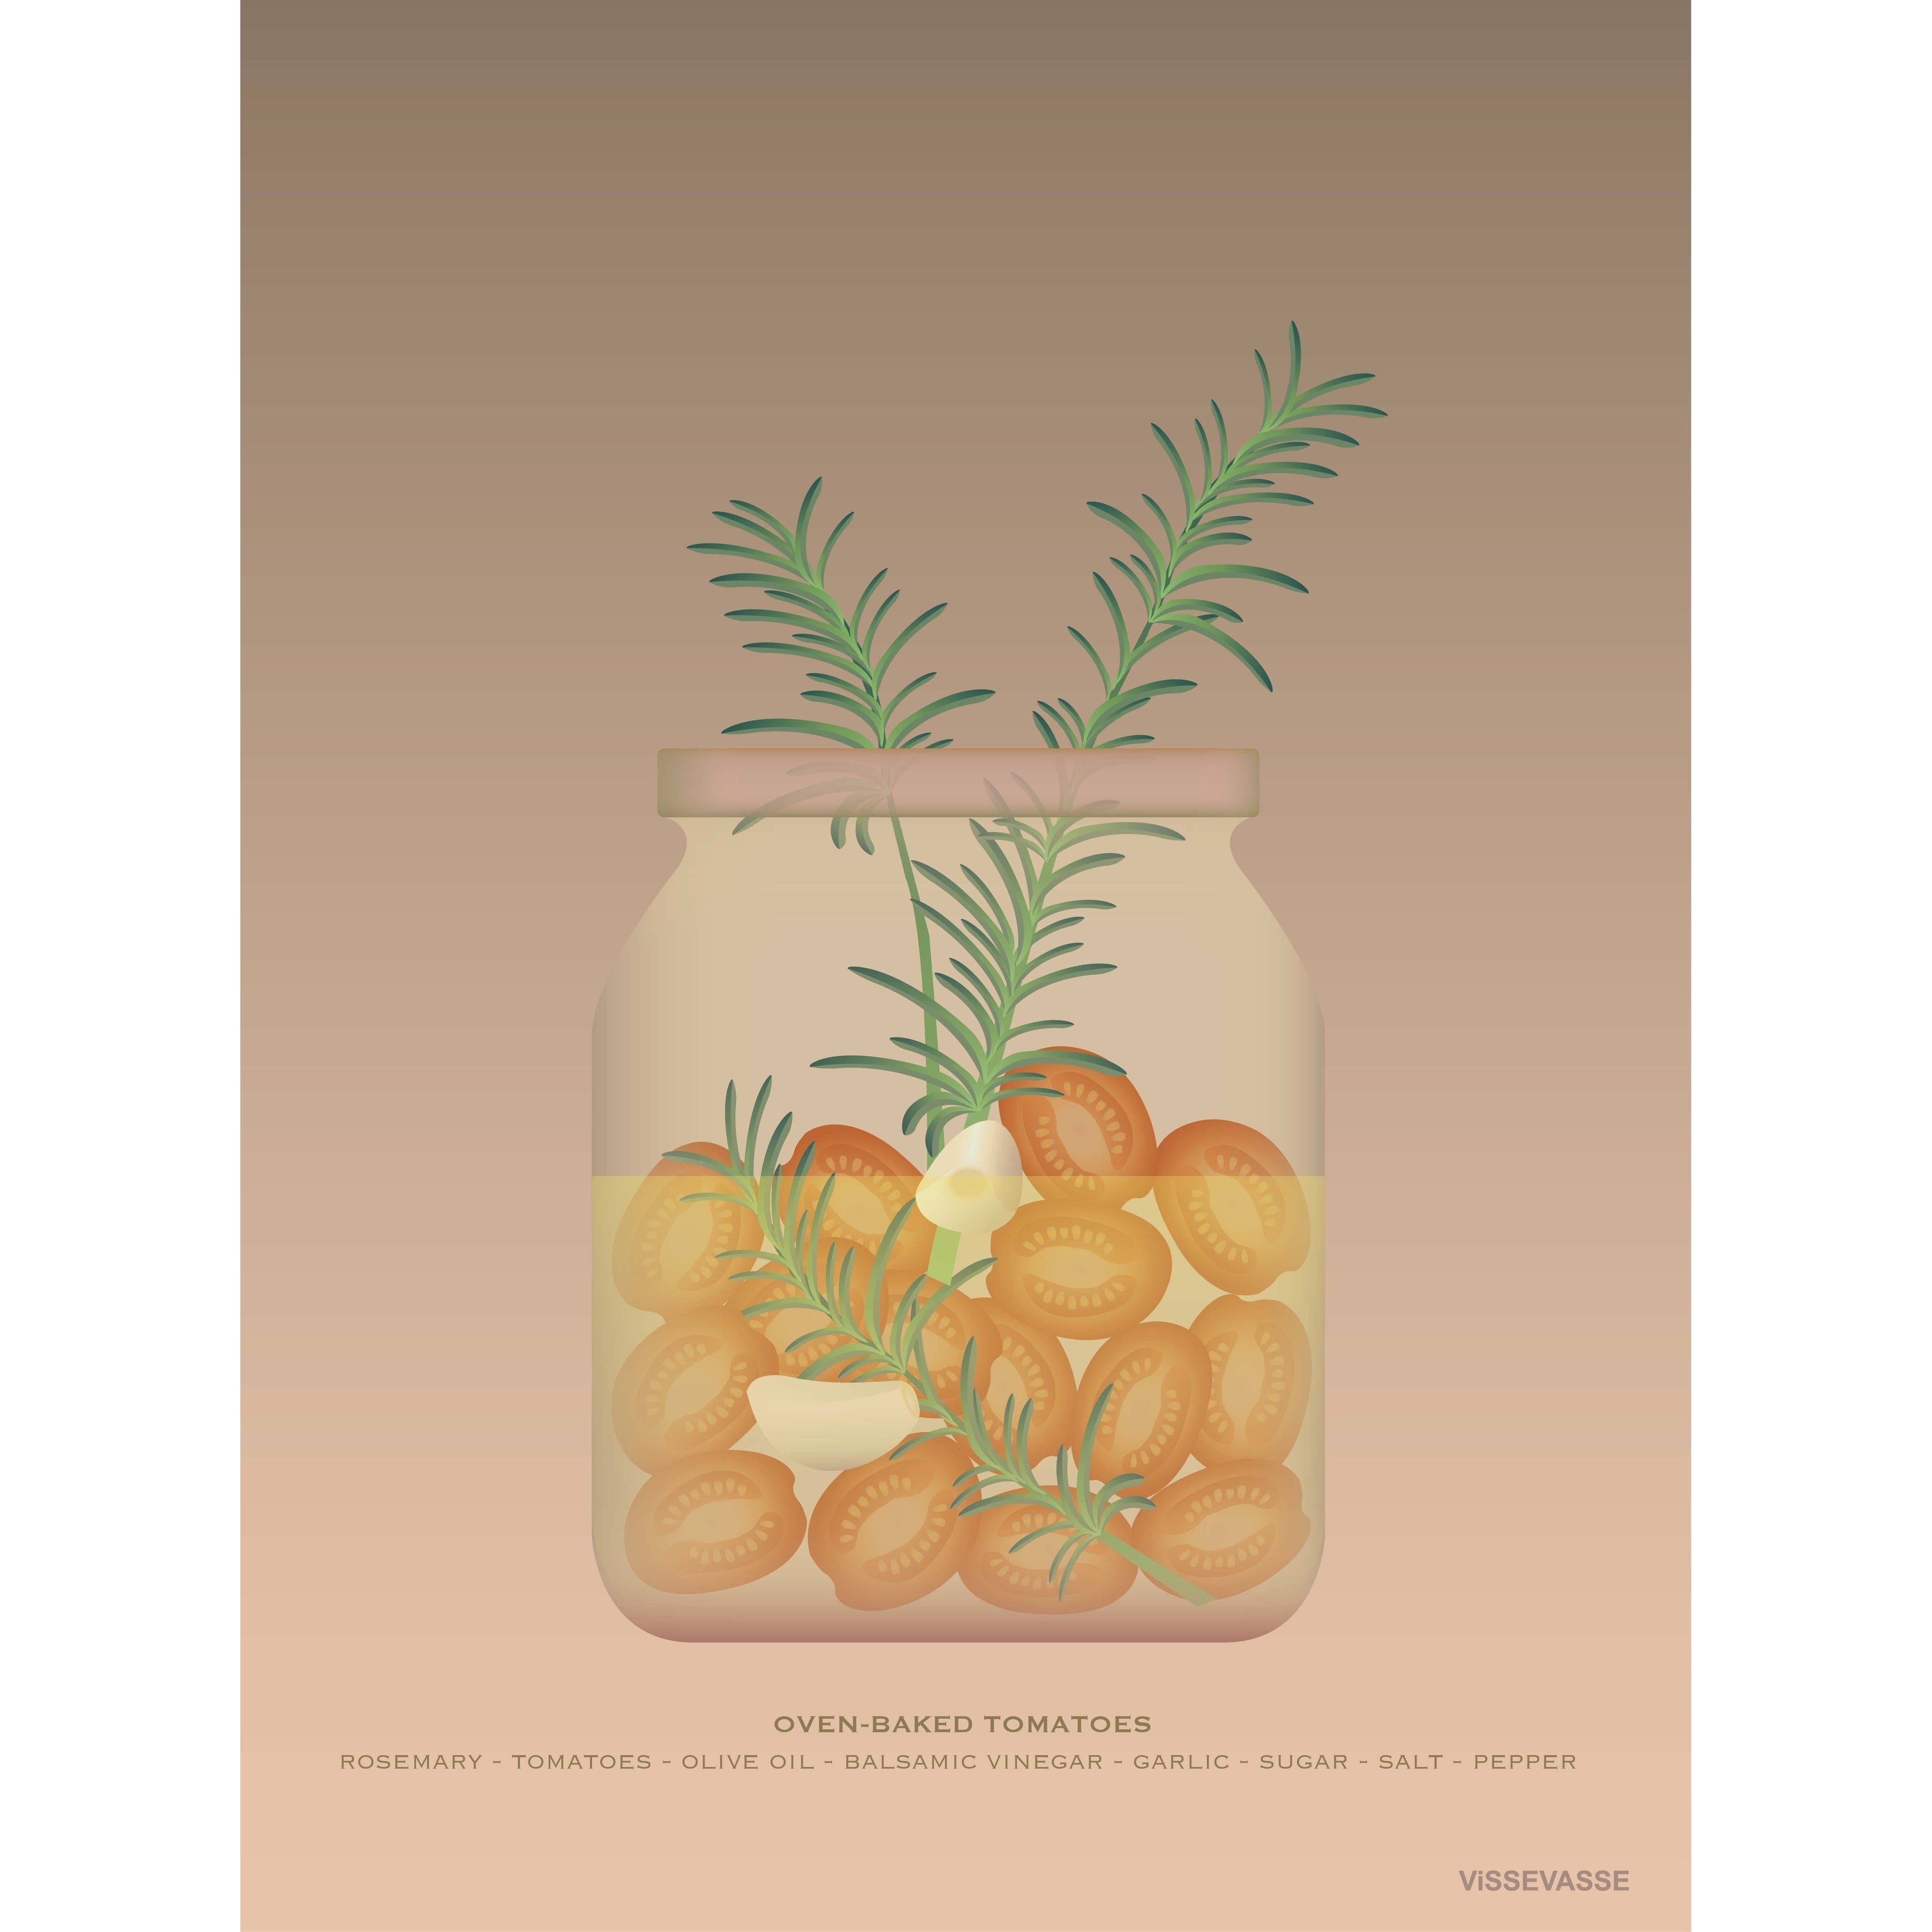 Vissevasse Ofengebackene Tomaten Poster, 15 X21 Cm